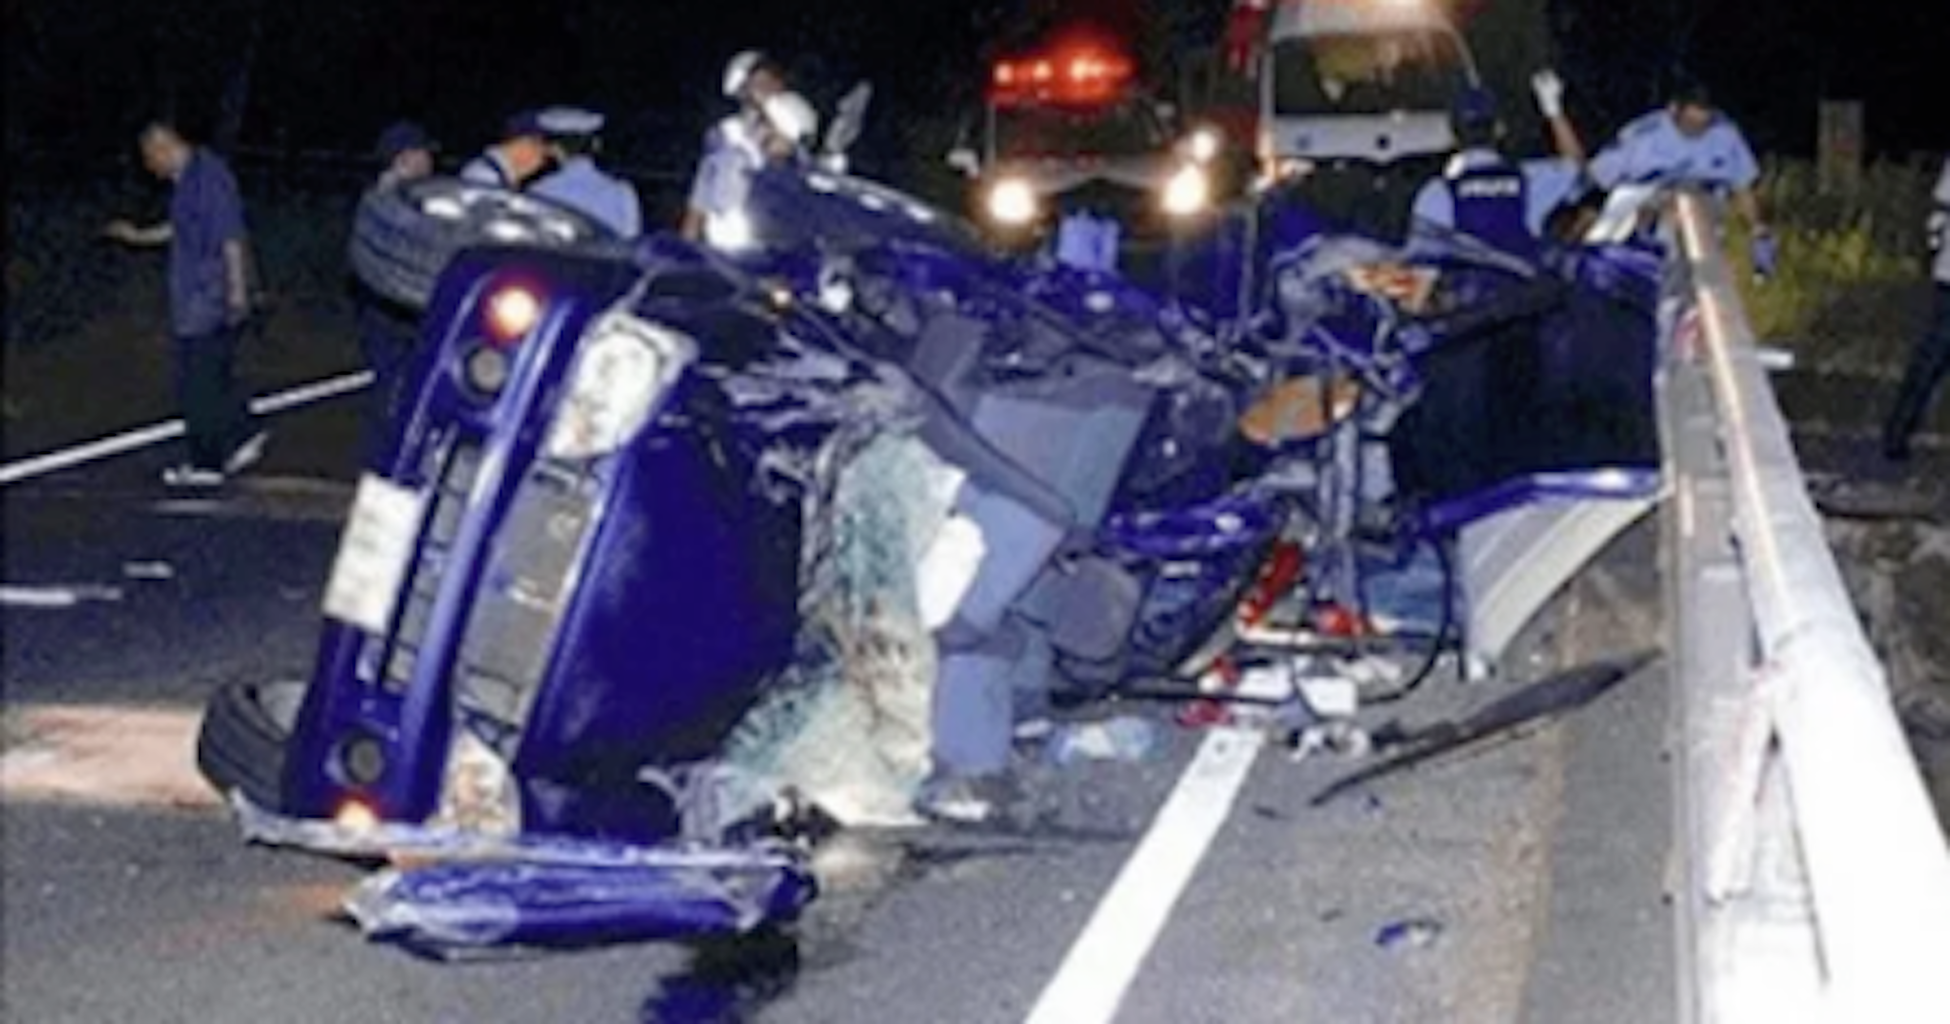 閲覧注意 19歳5人が交通事故死 車が大破する前に撮った自撮り写真がヤバイ 気になるnews